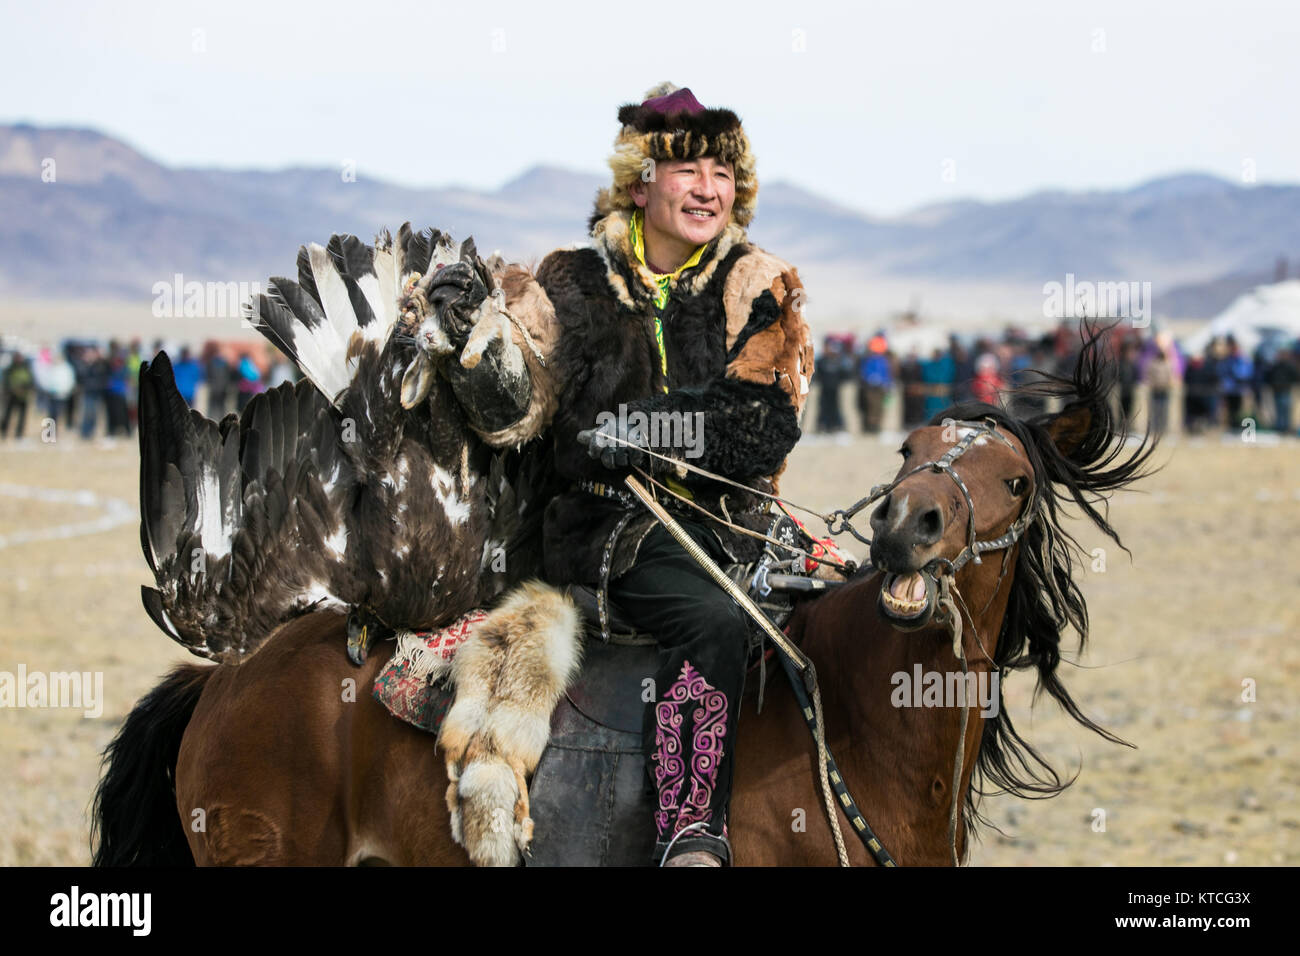 Eagle kazakhs hunter à cheval pendant le Festival Golden Eagle en Mongolie Banque D'Images